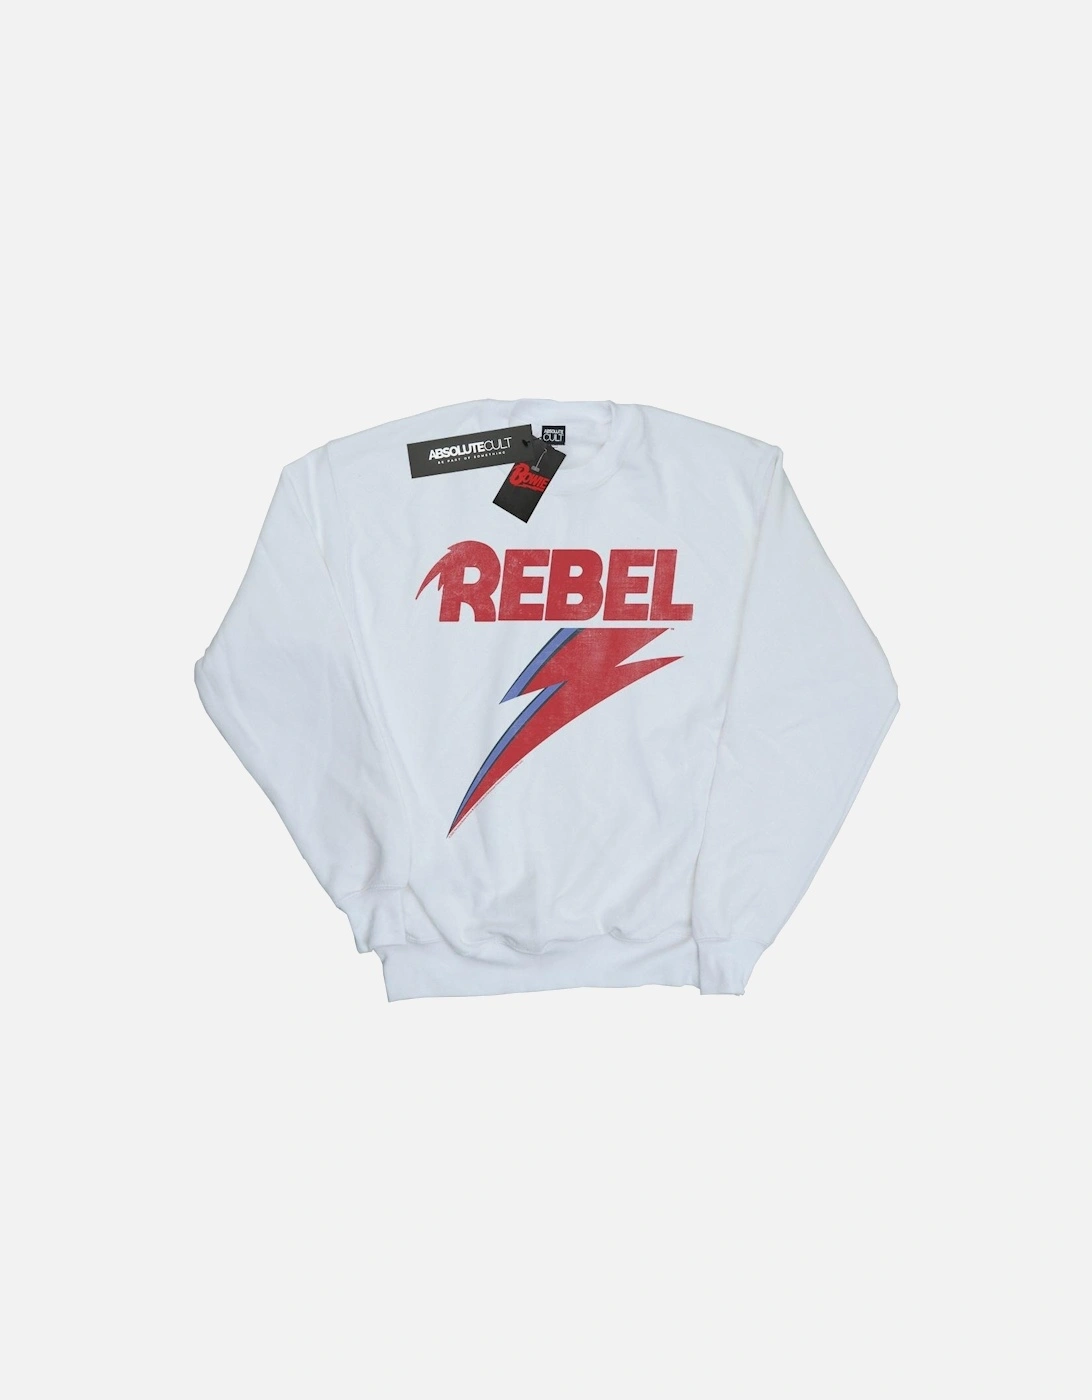 Womens/Ladies Distressed Rebel Sweatshirt, 4 of 3